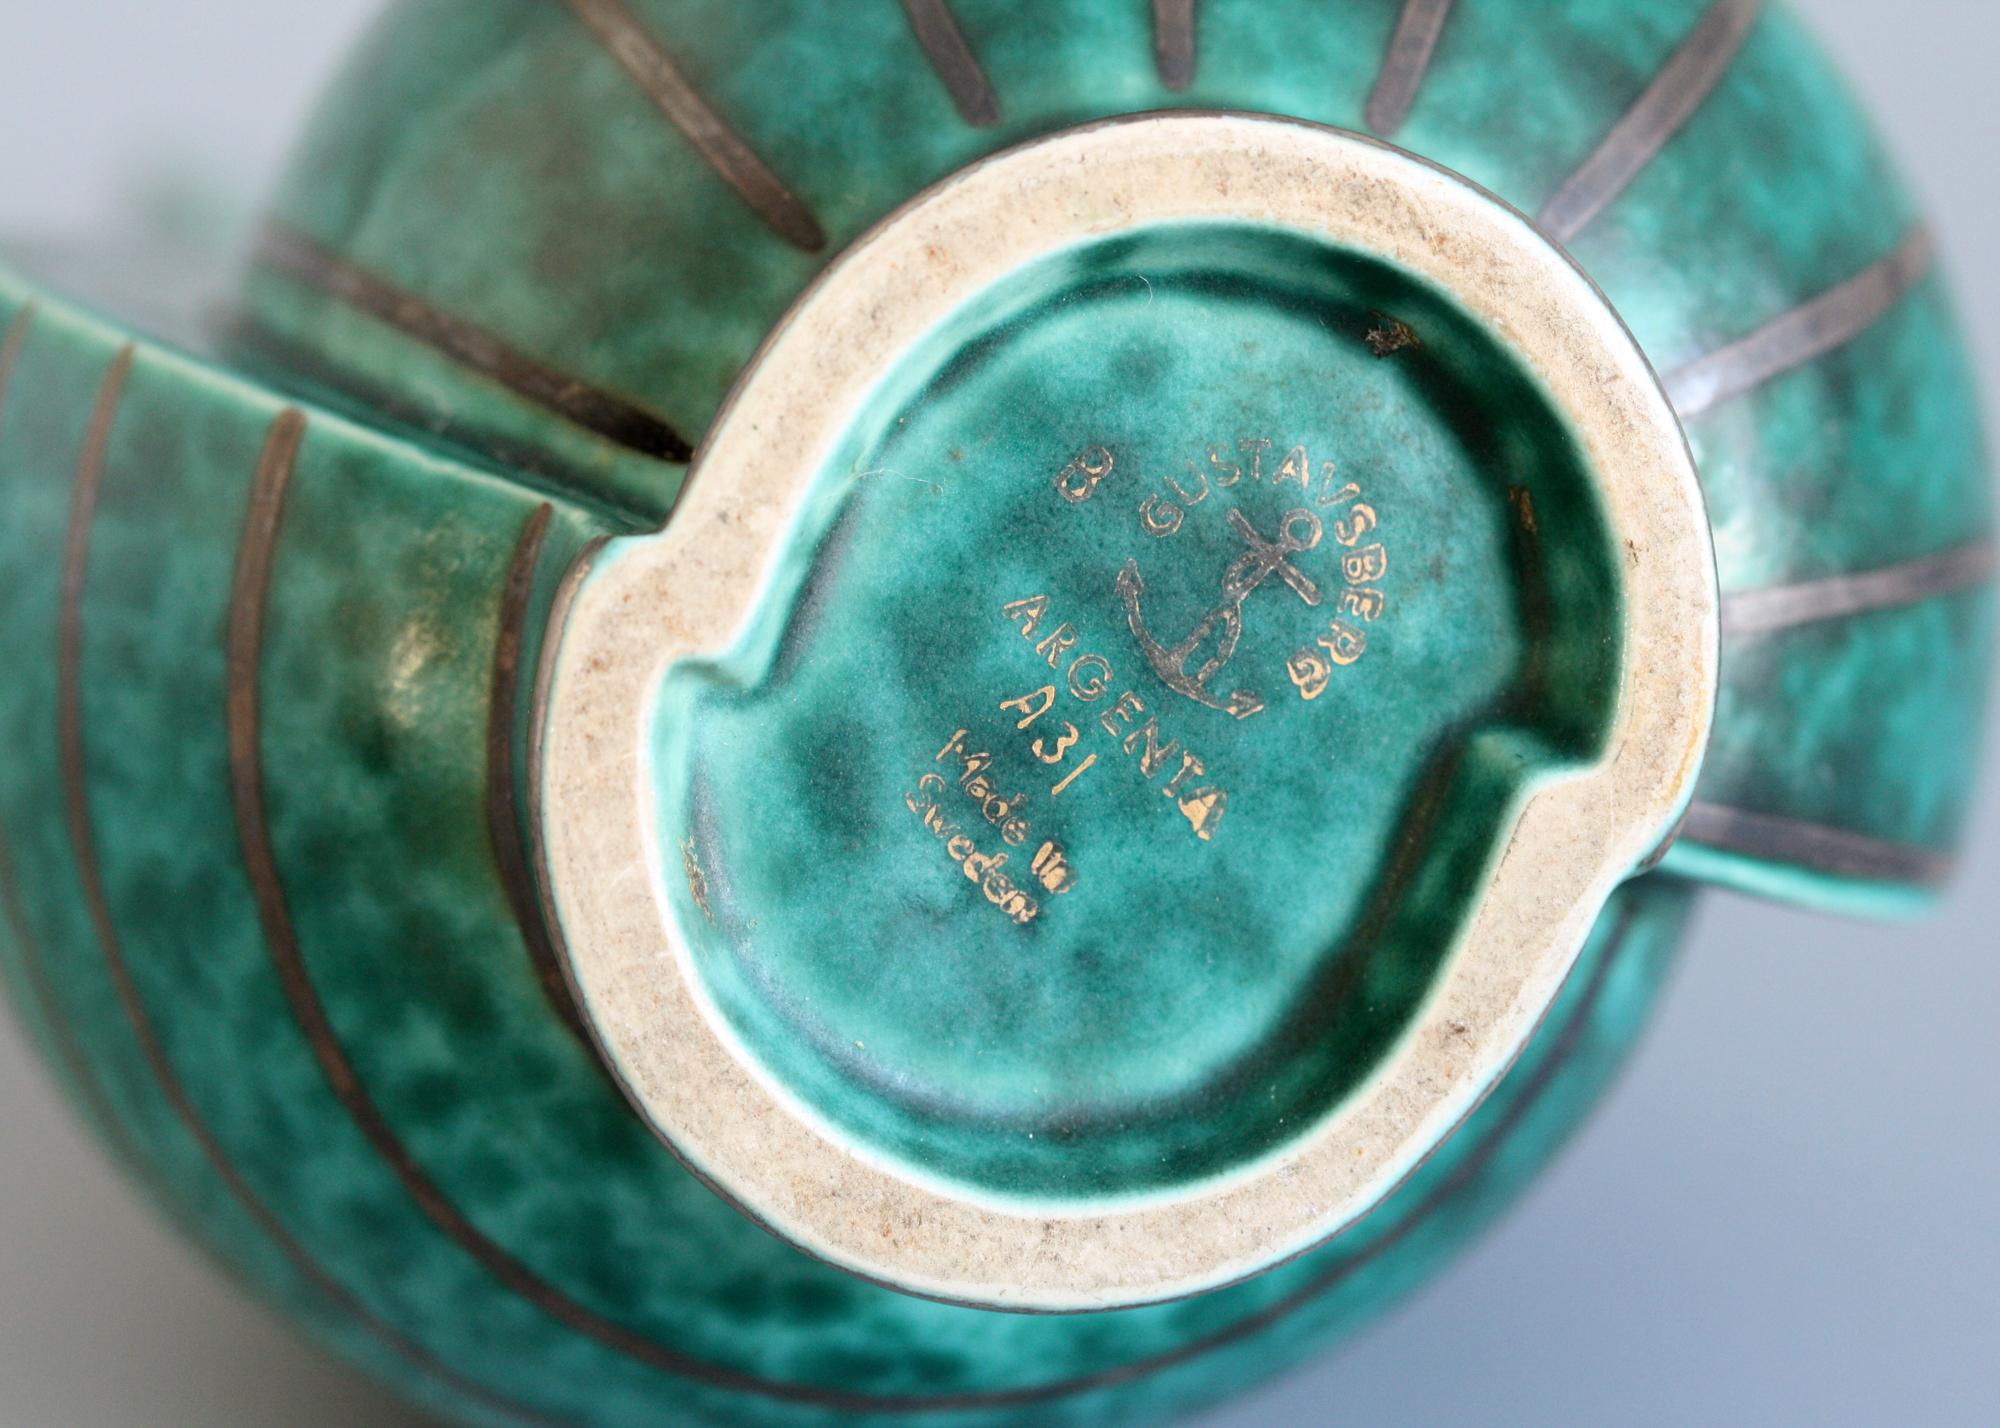 gustavsberg pottery marks